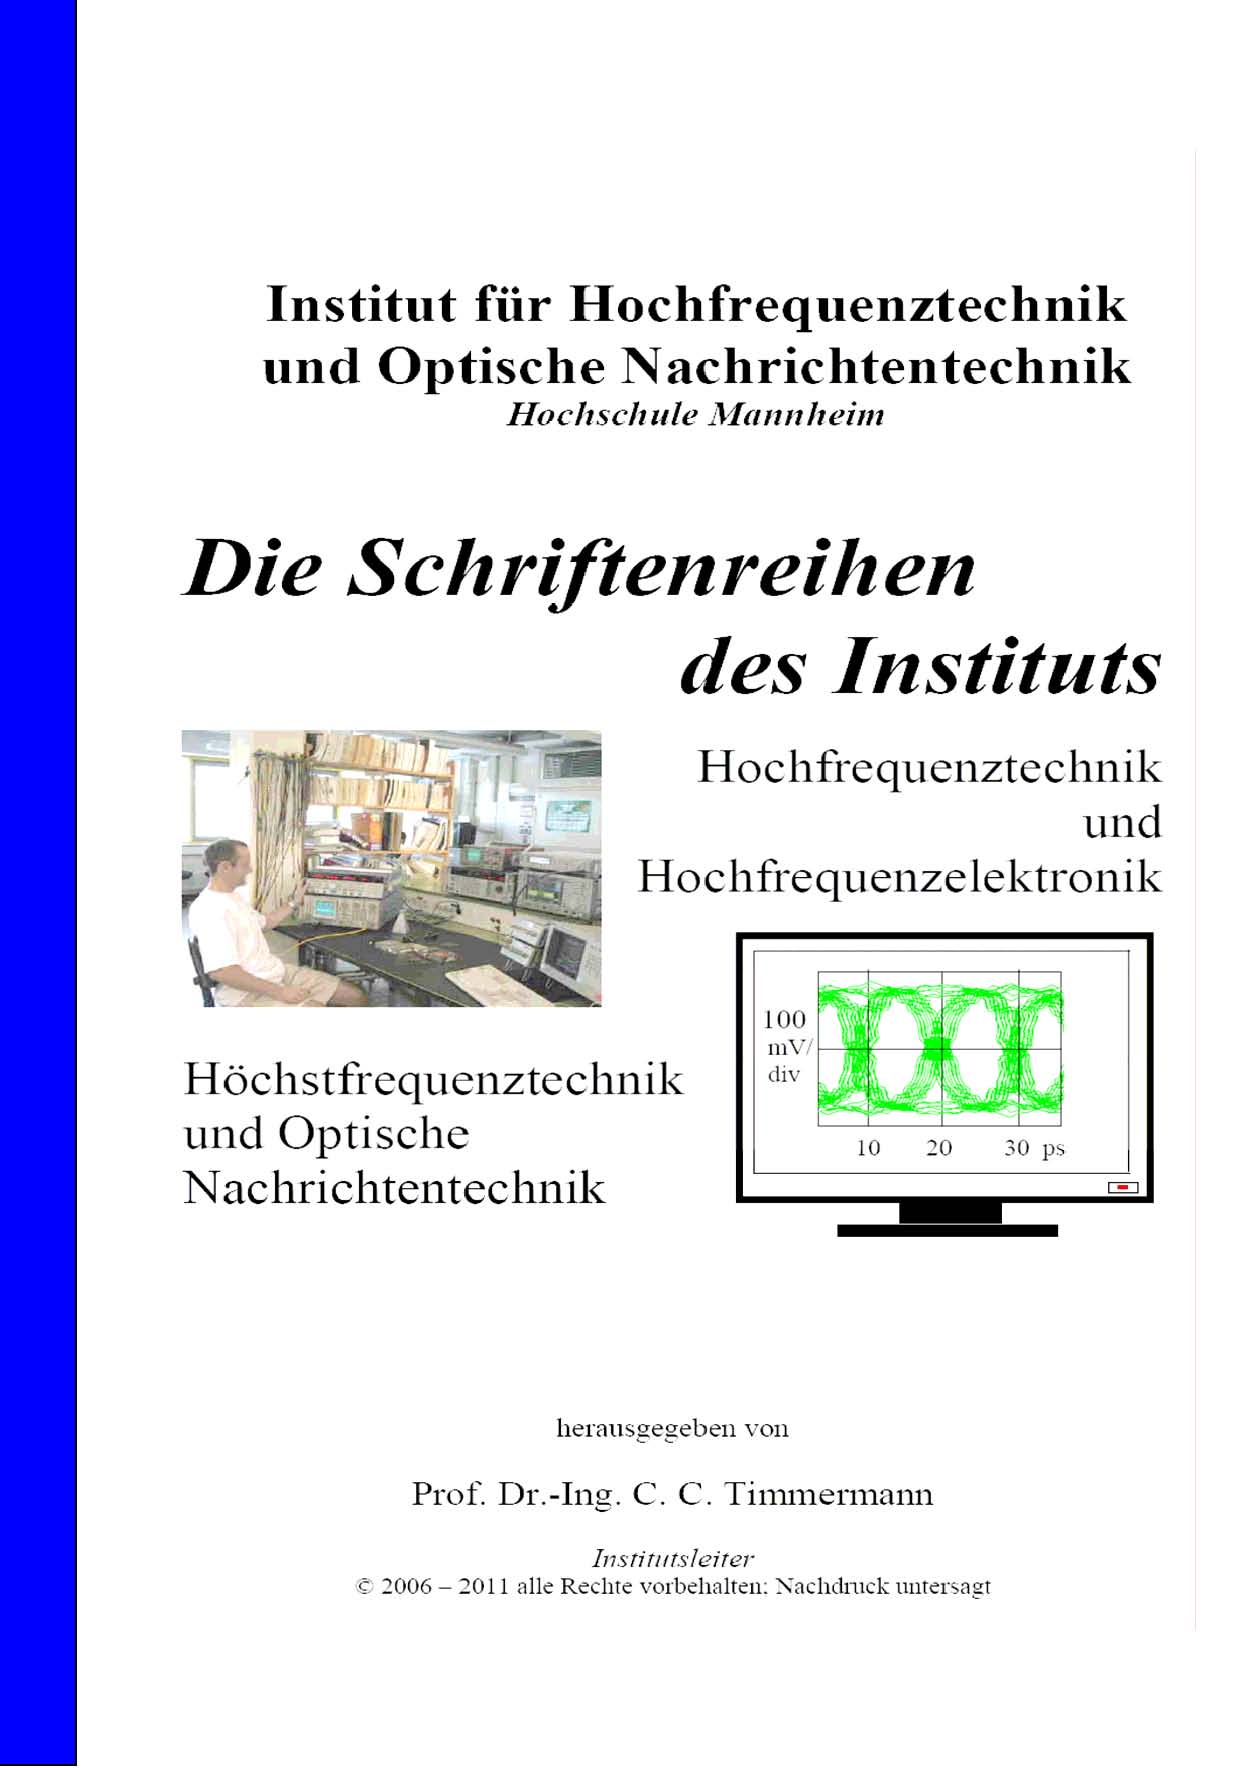 Schriftenreihe Hochfrequenztechnik von Prof. Dr. Ing. C.C. Timmermann